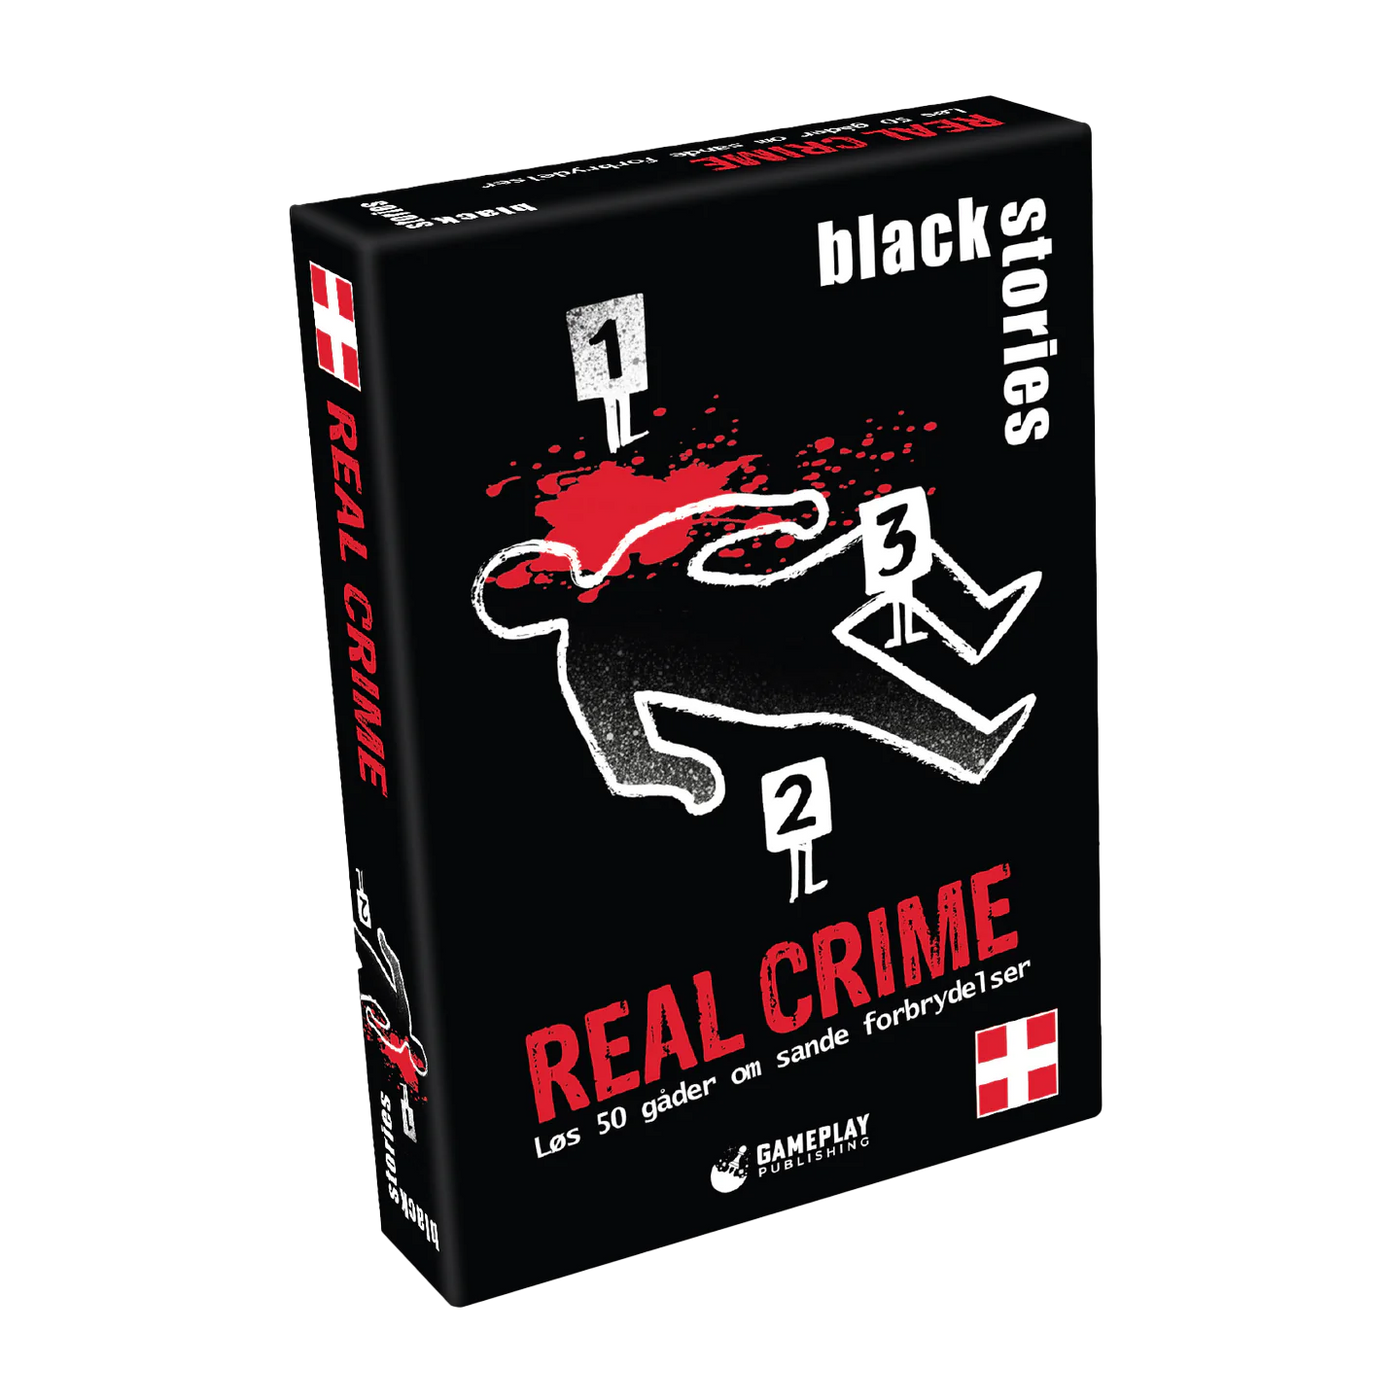 Black Stories - Real Crime (Dansk)